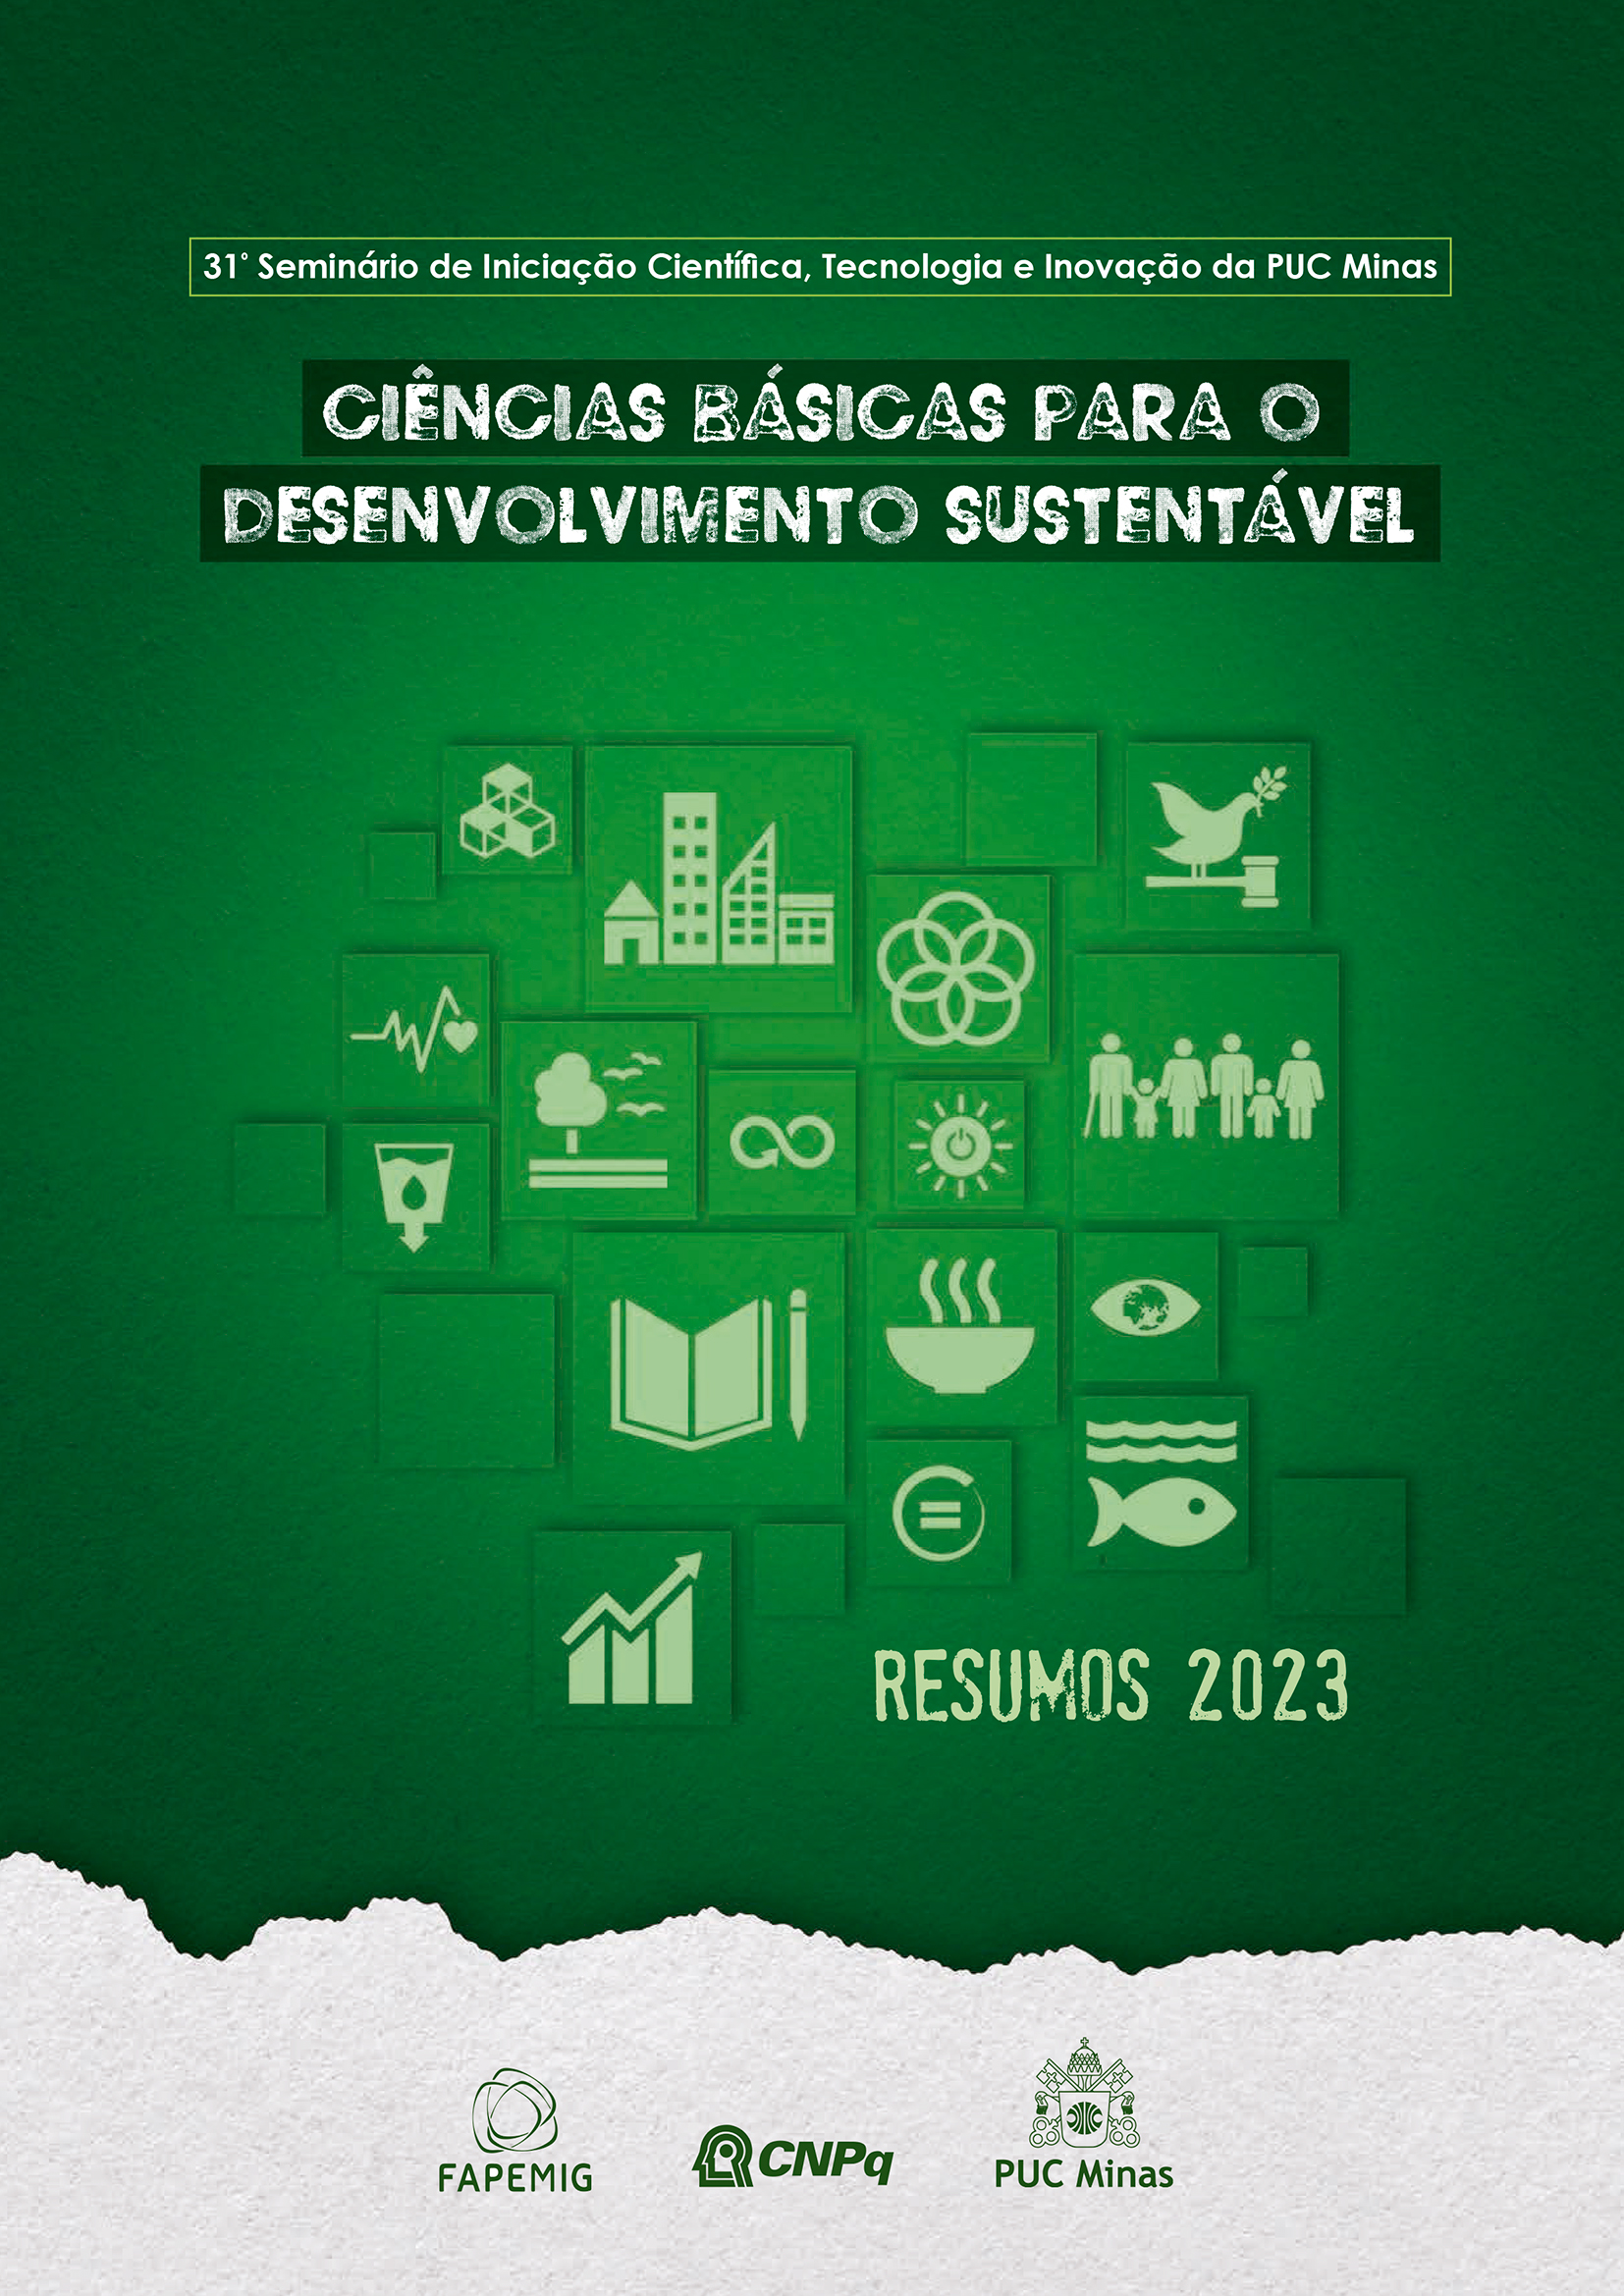 31º Seminário de Iniciação Científica, Tecnologia e Inovação da PUC Minas (Resusmos 2023)